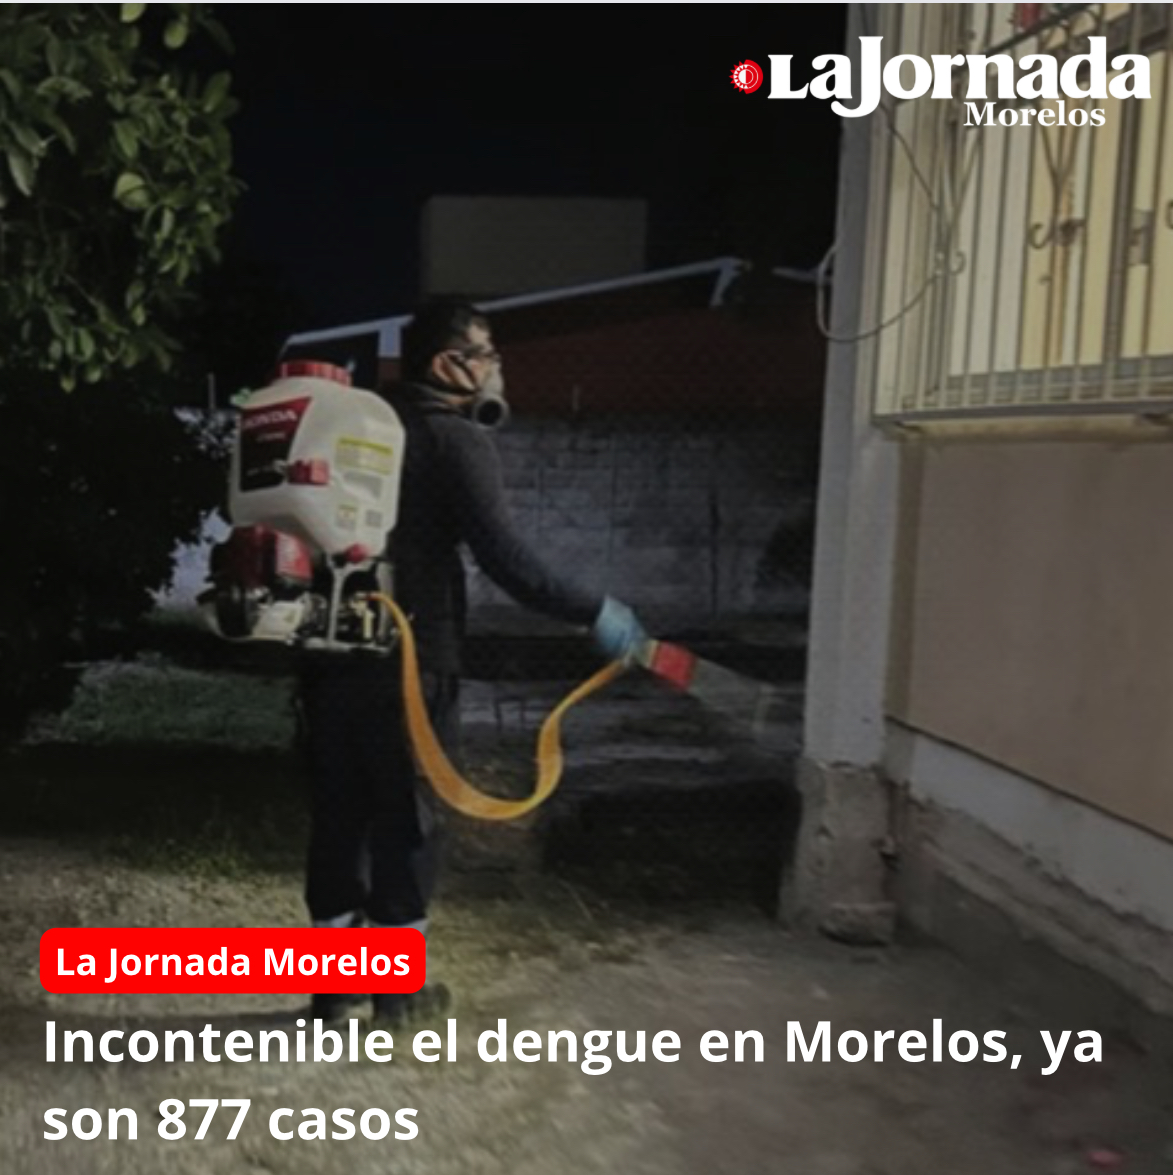 Incontenible el dengue en Morelos, ya son 877 casos